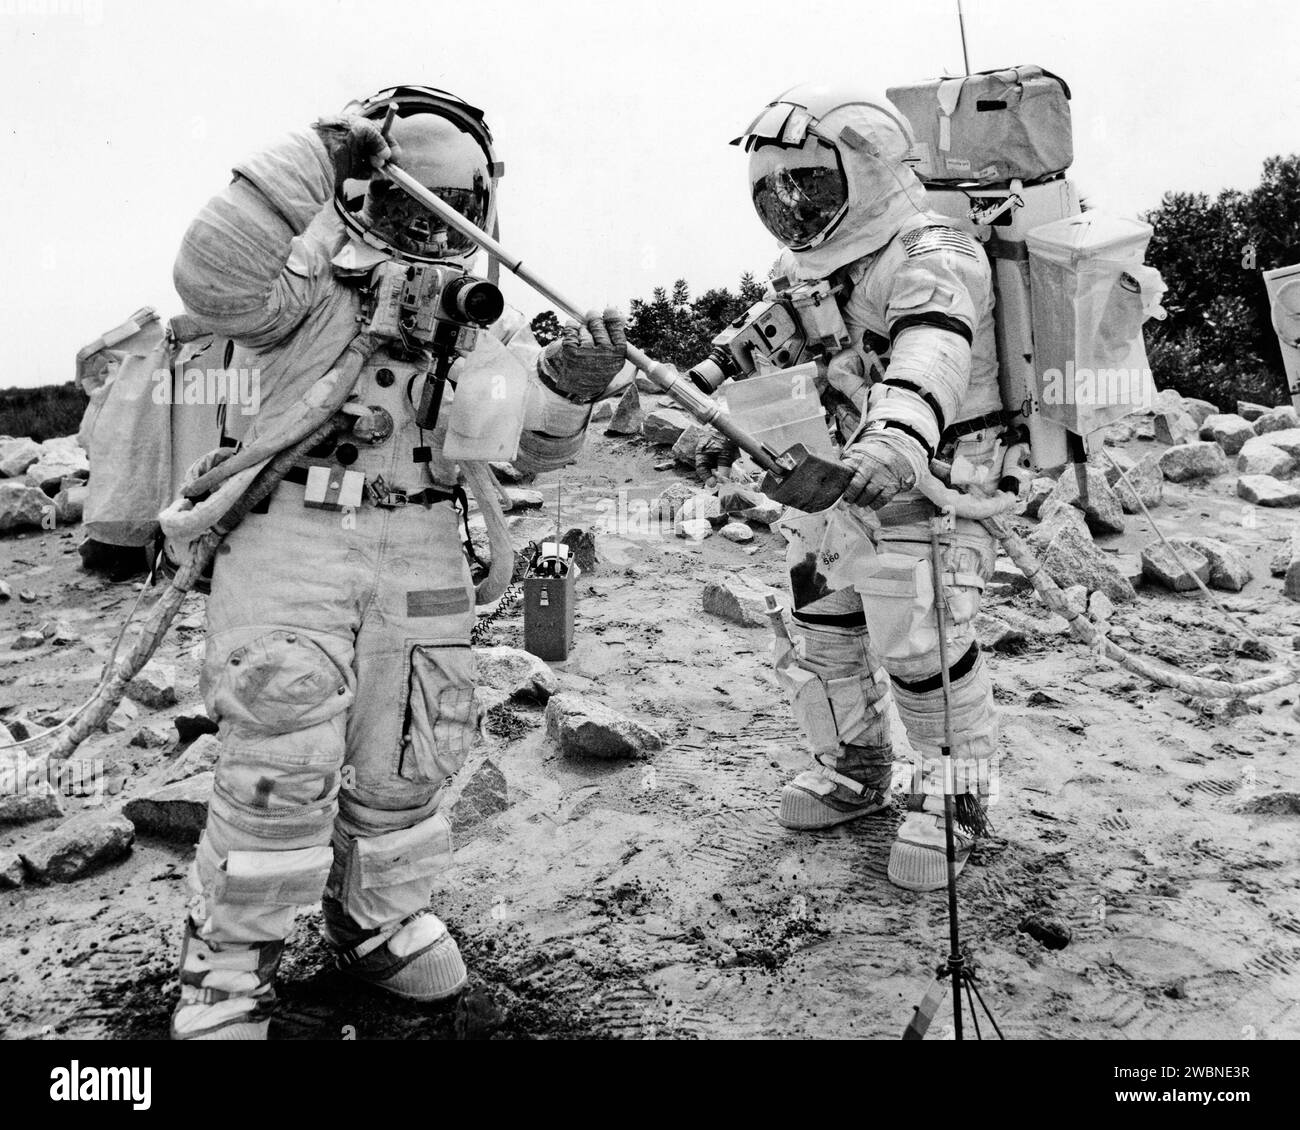 CAPE CANAVERAL, Ban. -- il pilota del modulo lunare Apollo 17 Harrison H. Schmitt, a sinistra, raccoglie campioni di terreno in un sacchetto campione tenuto dal comandante della missione Eugene A. Cernan durante un simulato esercizio di addestramento sulla superficie lunare condotto al Kennedy Space Center. Schmitt e Cernan sono programmati per rimanere sulla superficie lunare per 75 ore, lasciando il loro modulo lunare tre volte per esplorare la regione del Taurus-Littrow della Luna. Il lancio del veicolo spaziale Apollo Saturn V, sempre con il pilota del modulo di comando astronauta Ronald E. Evans a bordo, è programmato non prima del 6 dicembre 1972. Foto Stock